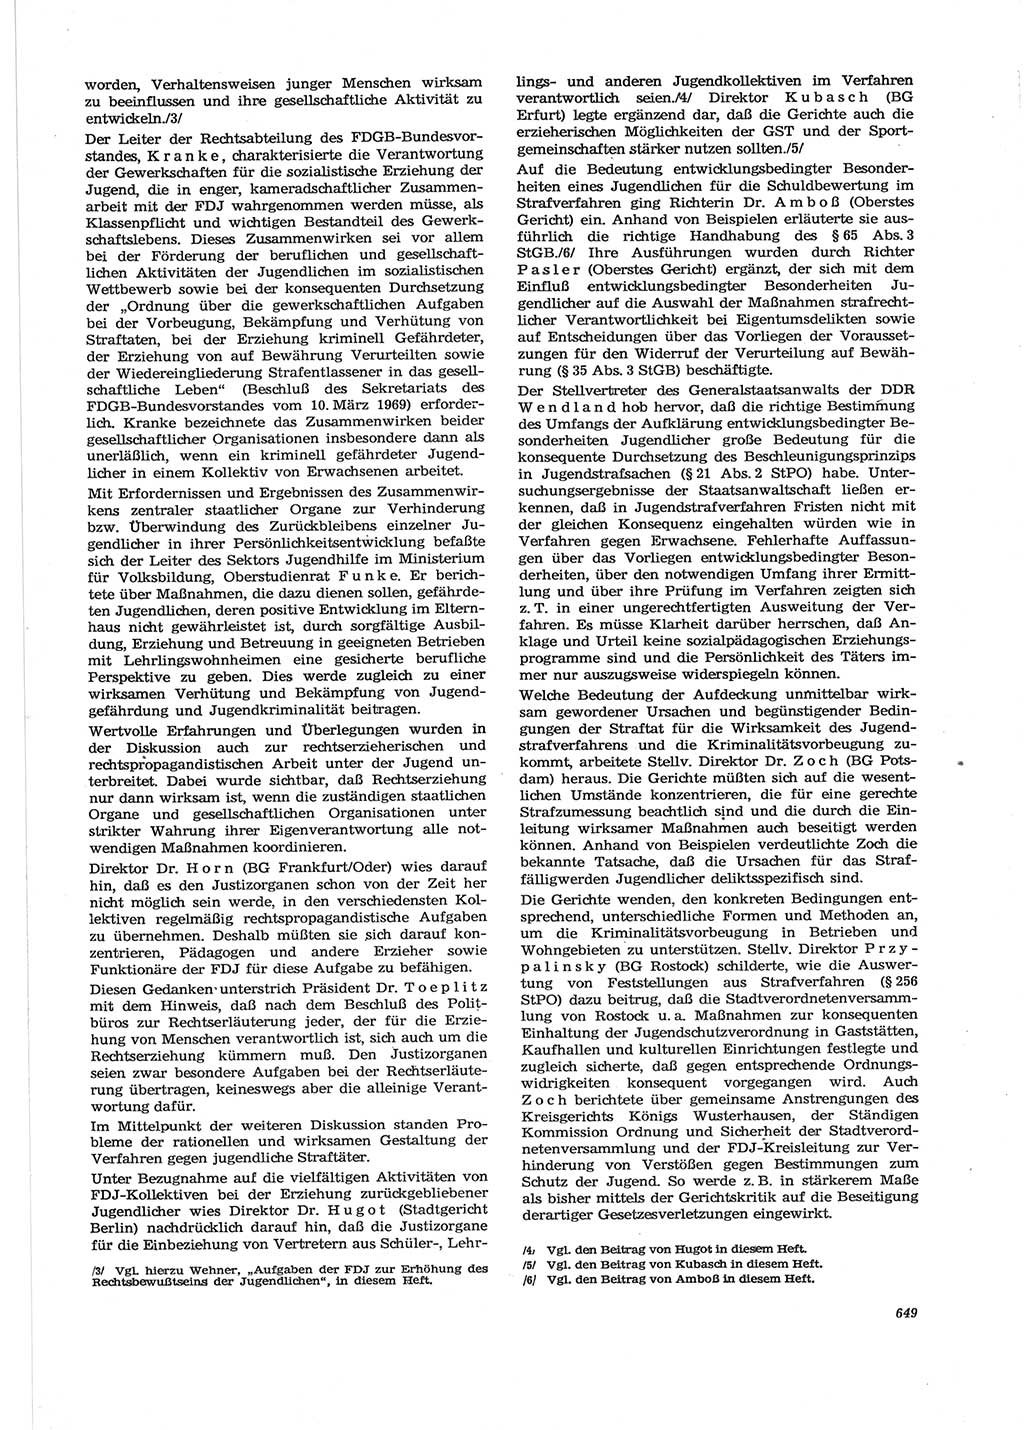 Neue Justiz (NJ), Zeitschrift für Recht und Rechtswissenschaft [Deutsche Demokratische Republik (DDR)], 28. Jahrgang 1974, Seite 649 (NJ DDR 1974, S. 649)